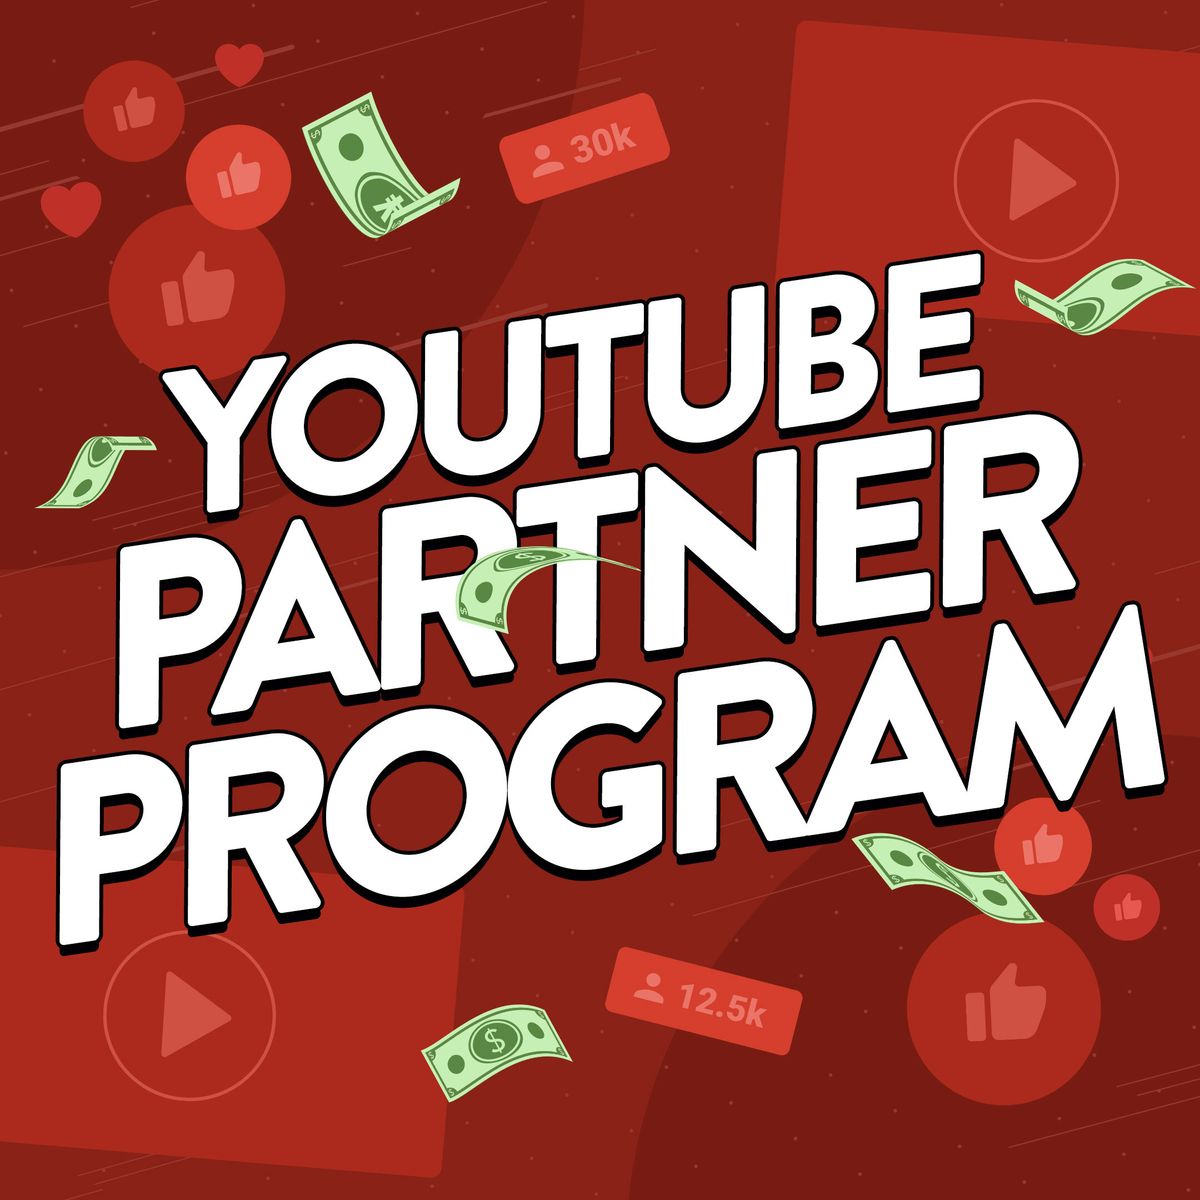 Illustration to accompany article explaining the YouTube Partner Program.